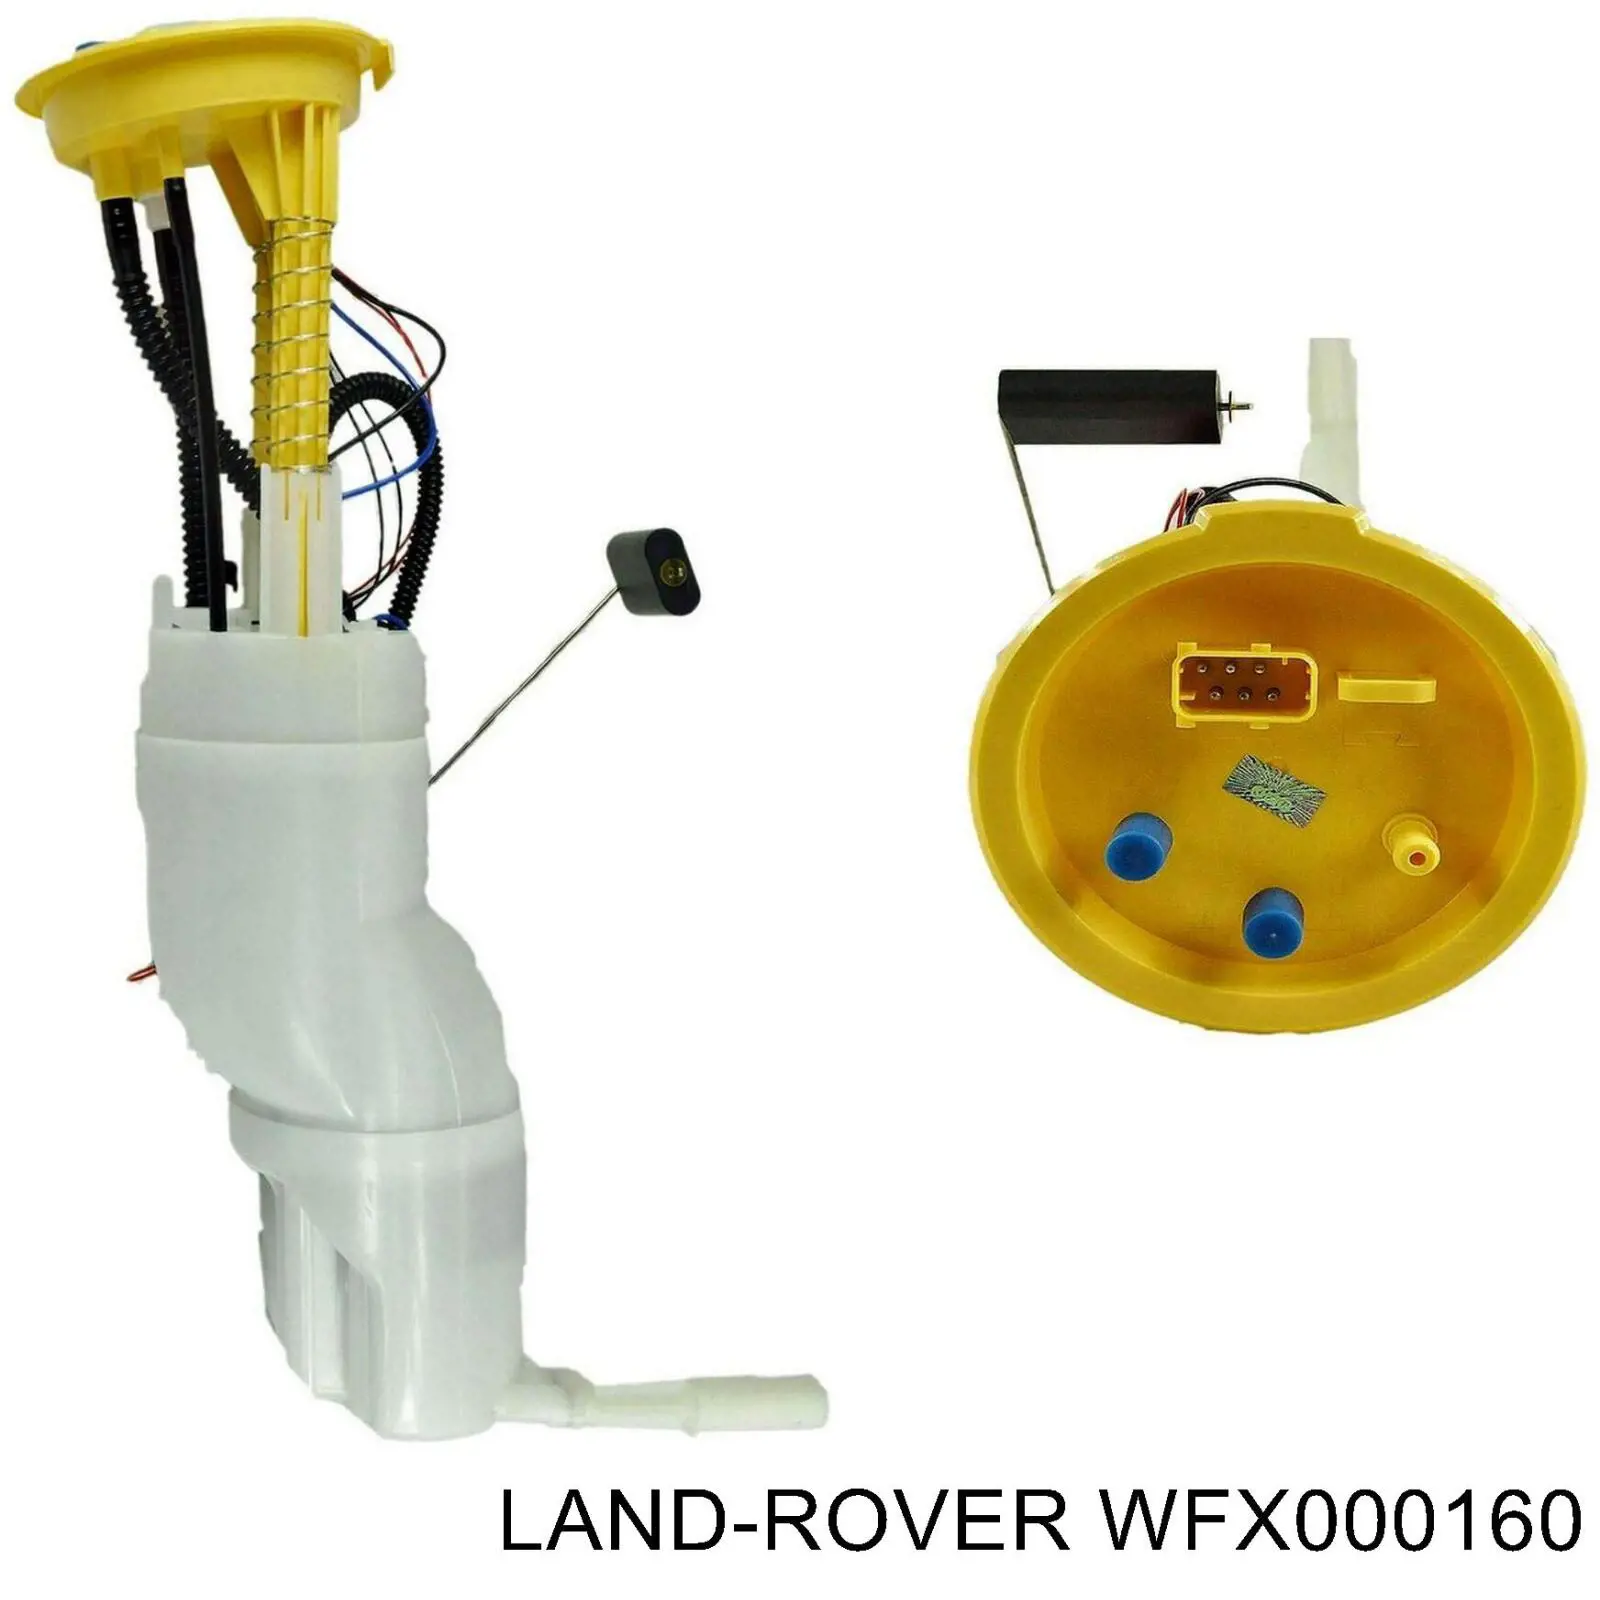 WFX000160 Land Rover паливний насос електричний, занурювальний